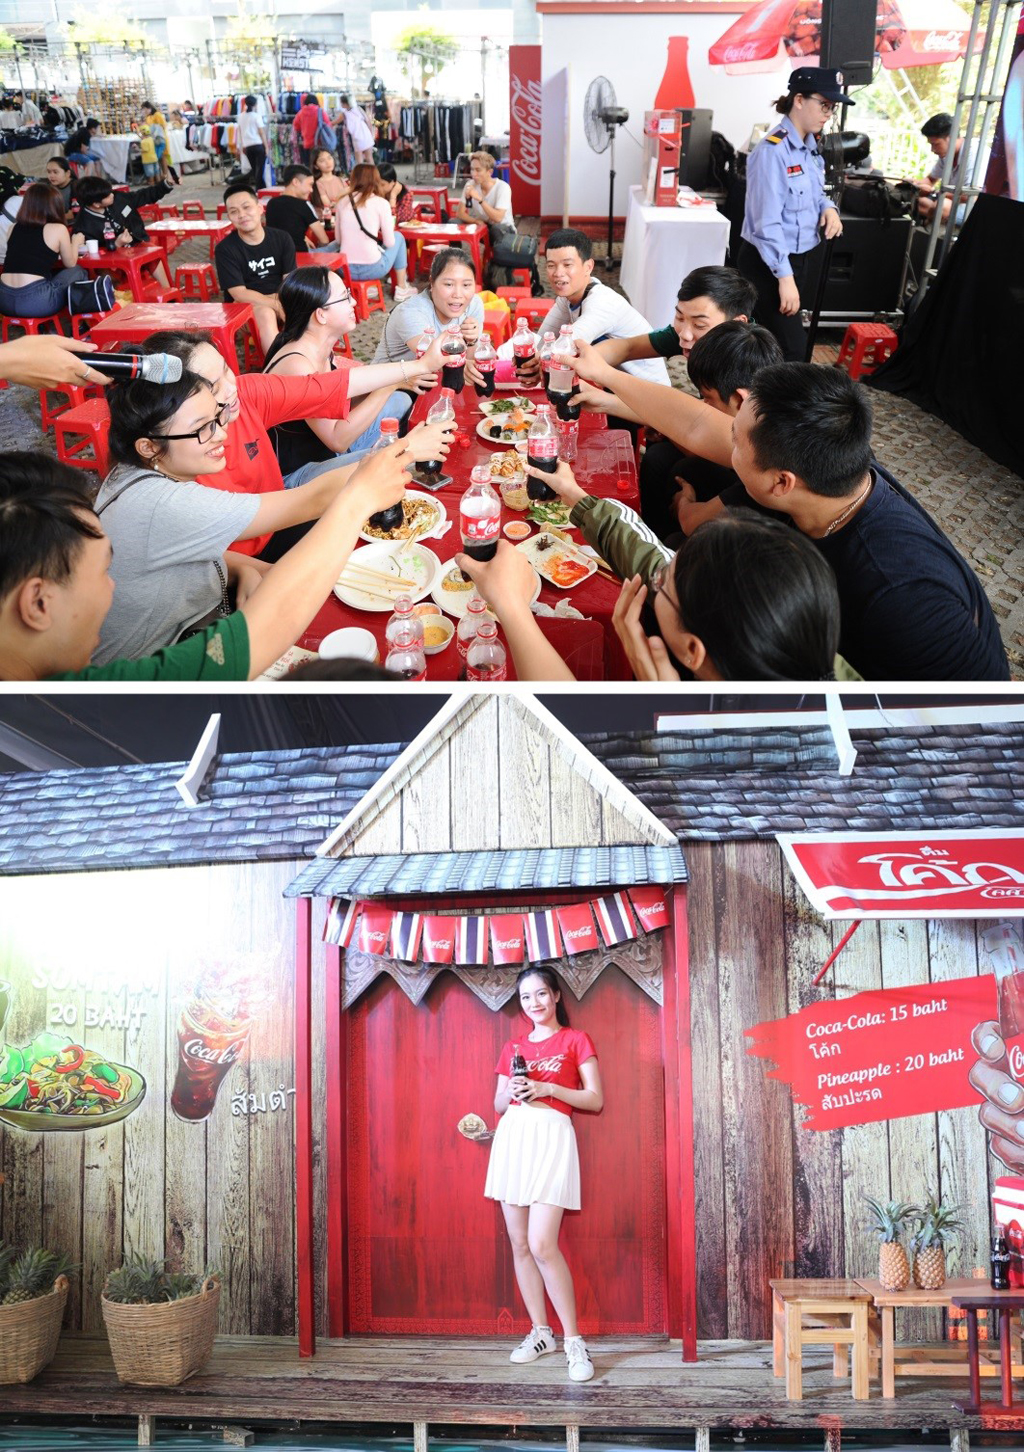 Lễ hội Ẩm thực Coca-Cola đã trở thành điểm hẹn yêu thích của tín đồ ẩm thực Hà Nội, Đà Nẵng, Sài thành vì nhiều đồ ăn hấp dẫn, càng thêm ngon khi đi kèm với thức uống mát lạnh và góc check-in lung linh!